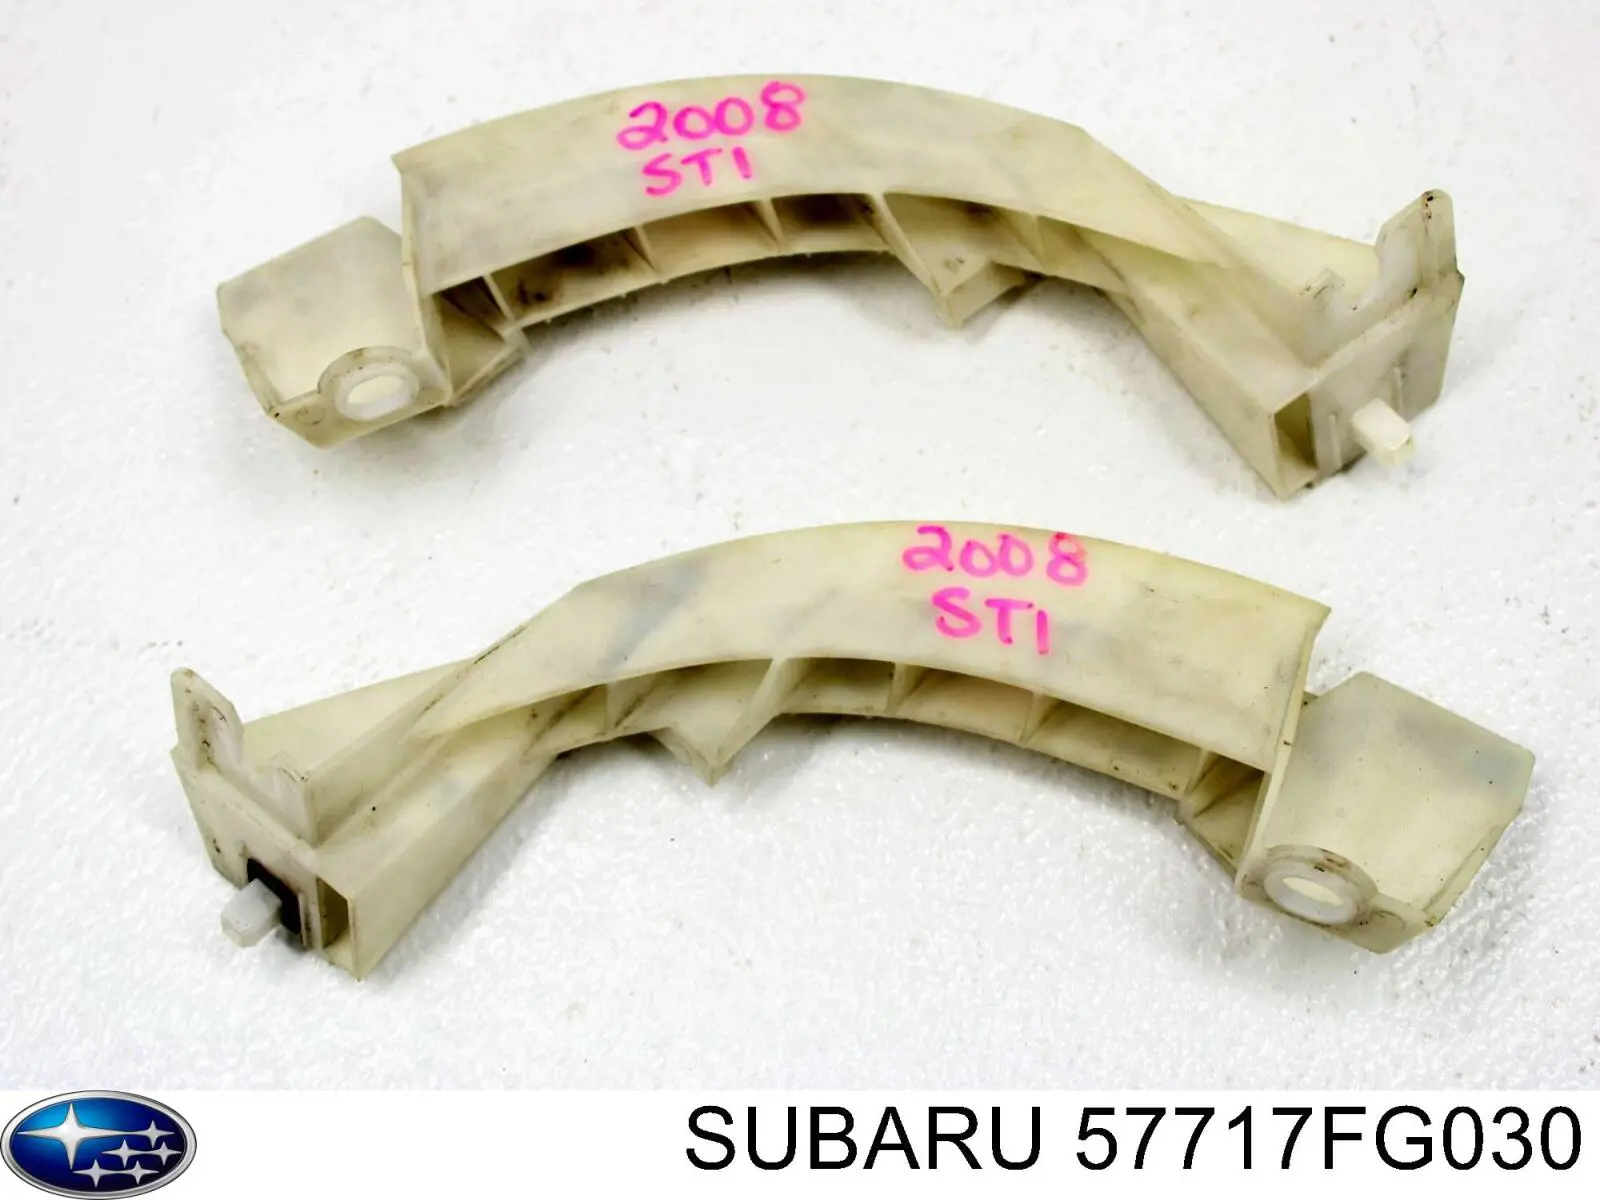 57717FG030 Subaru consola esquerda do pára-choque traseiro